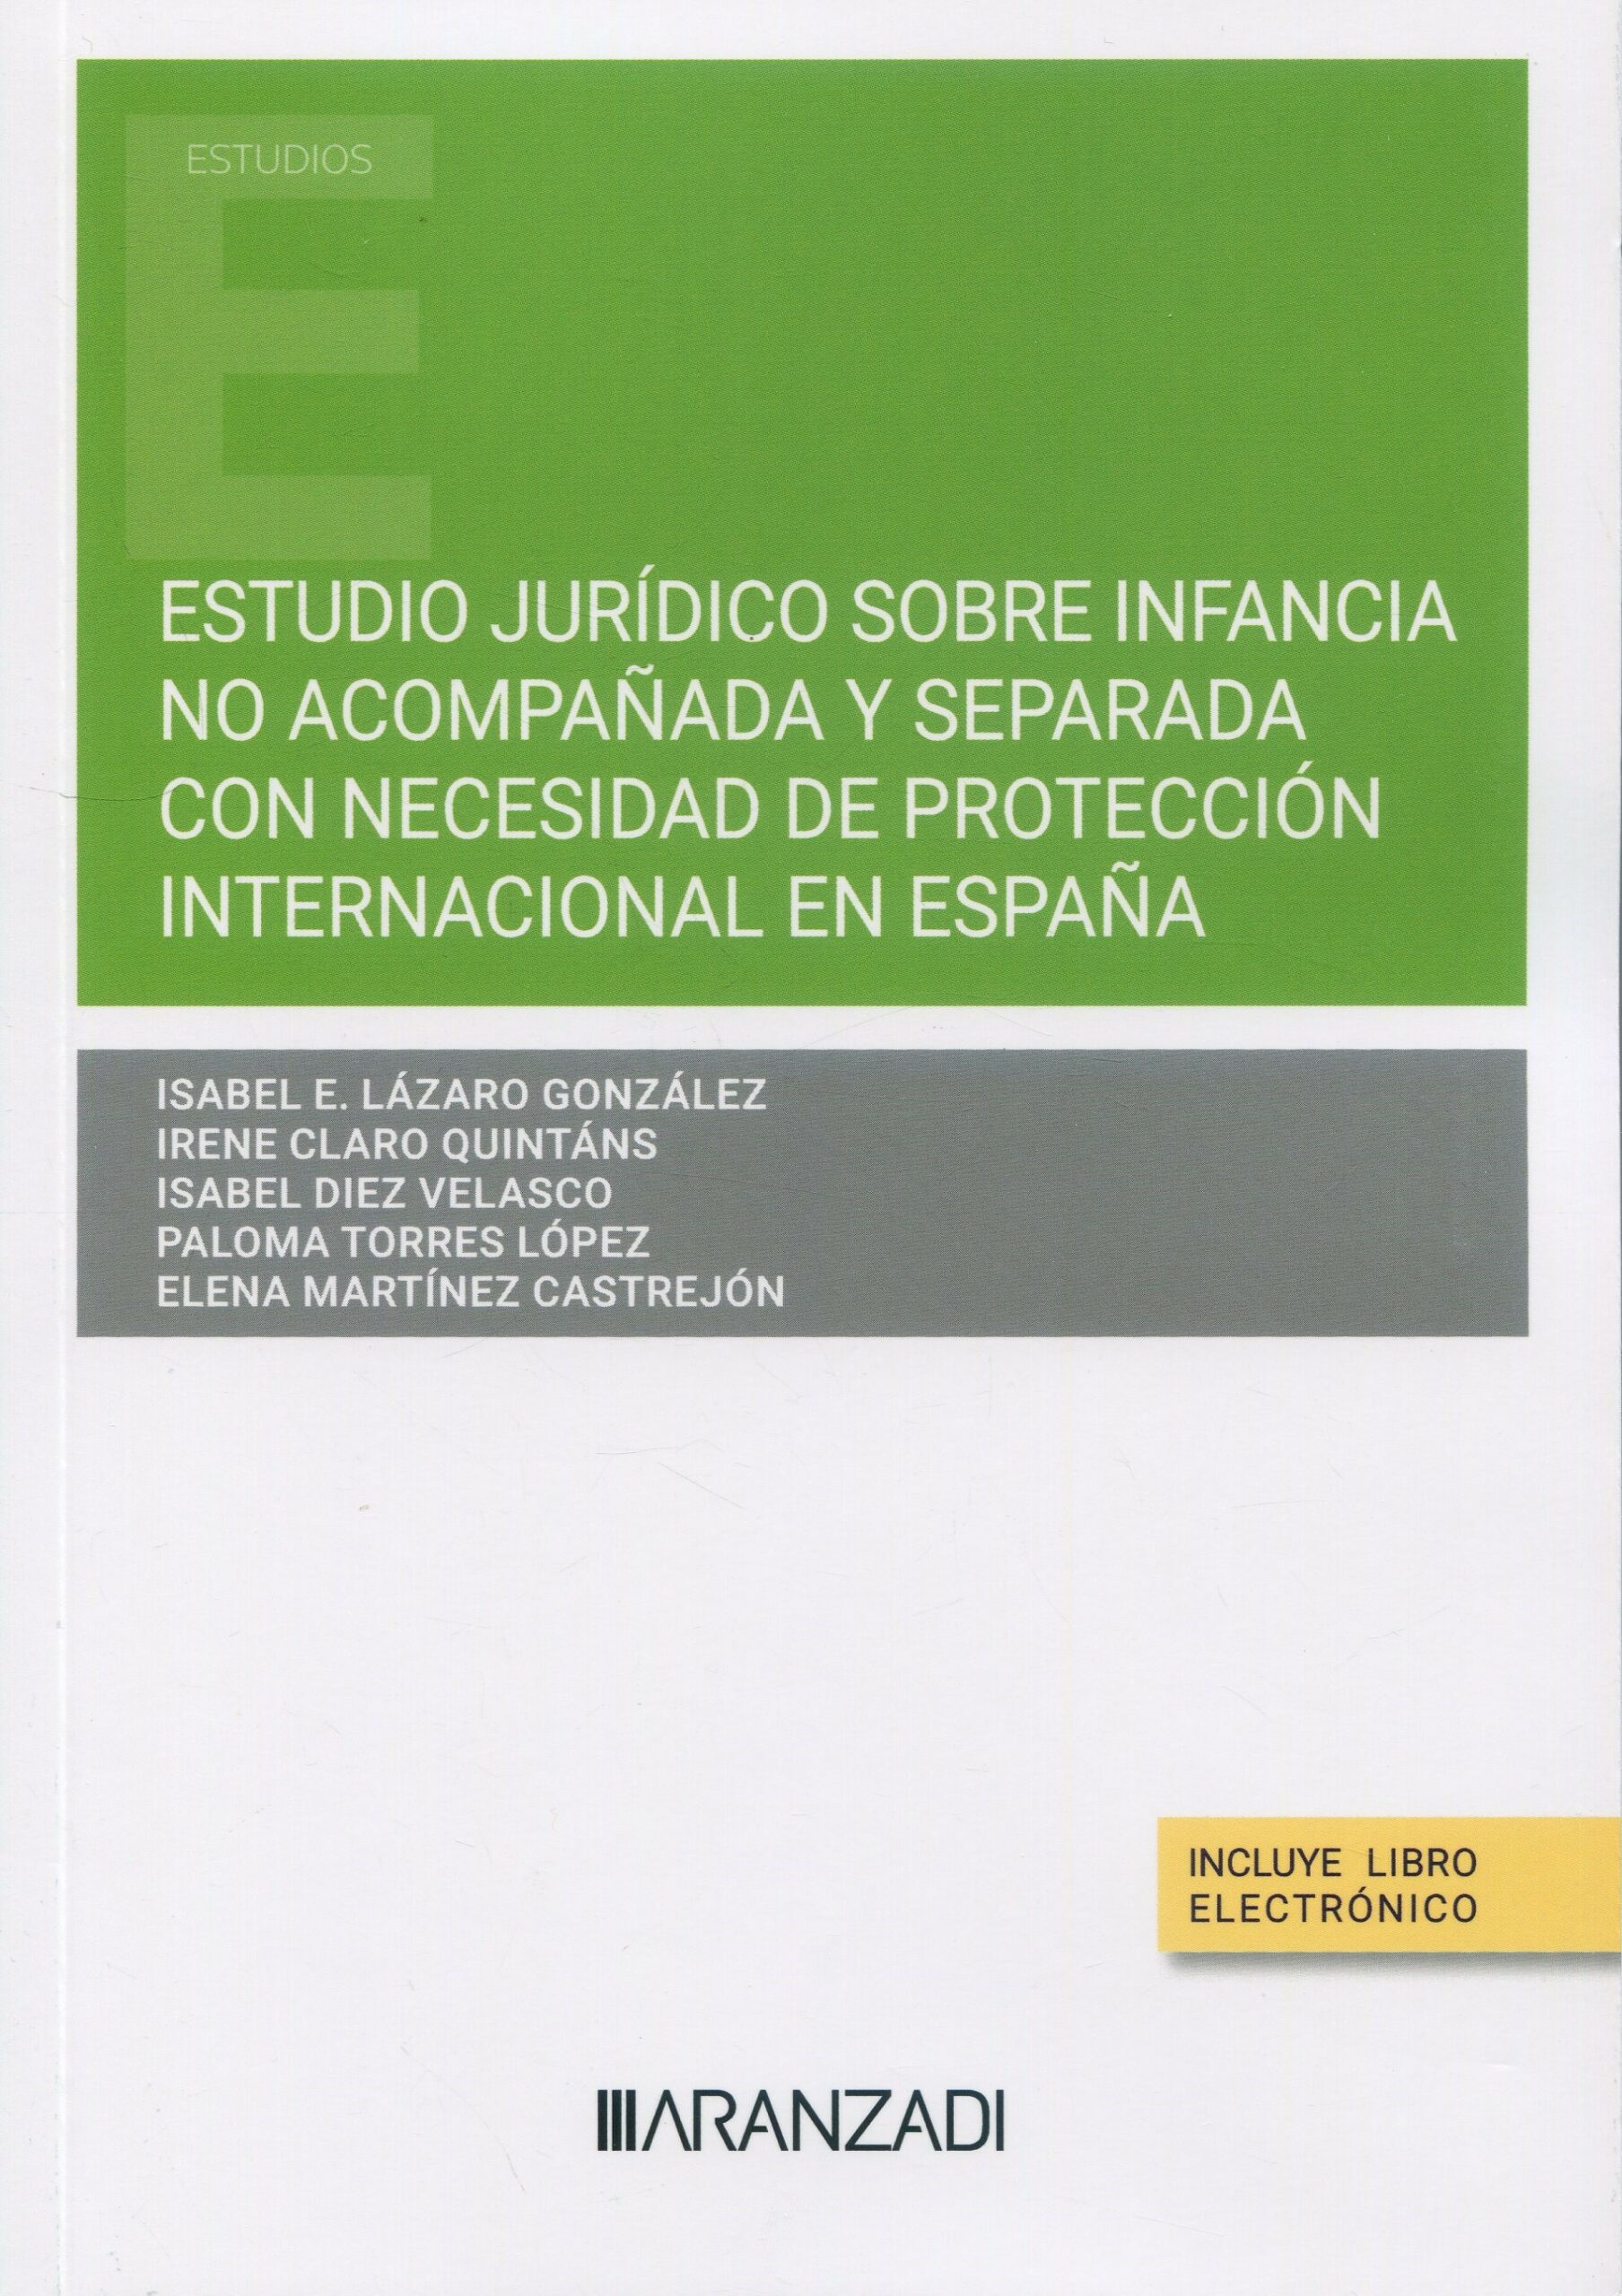 Estudio jurídico sobre infancia no acompañada y separada con necesidad de protección internacional en España